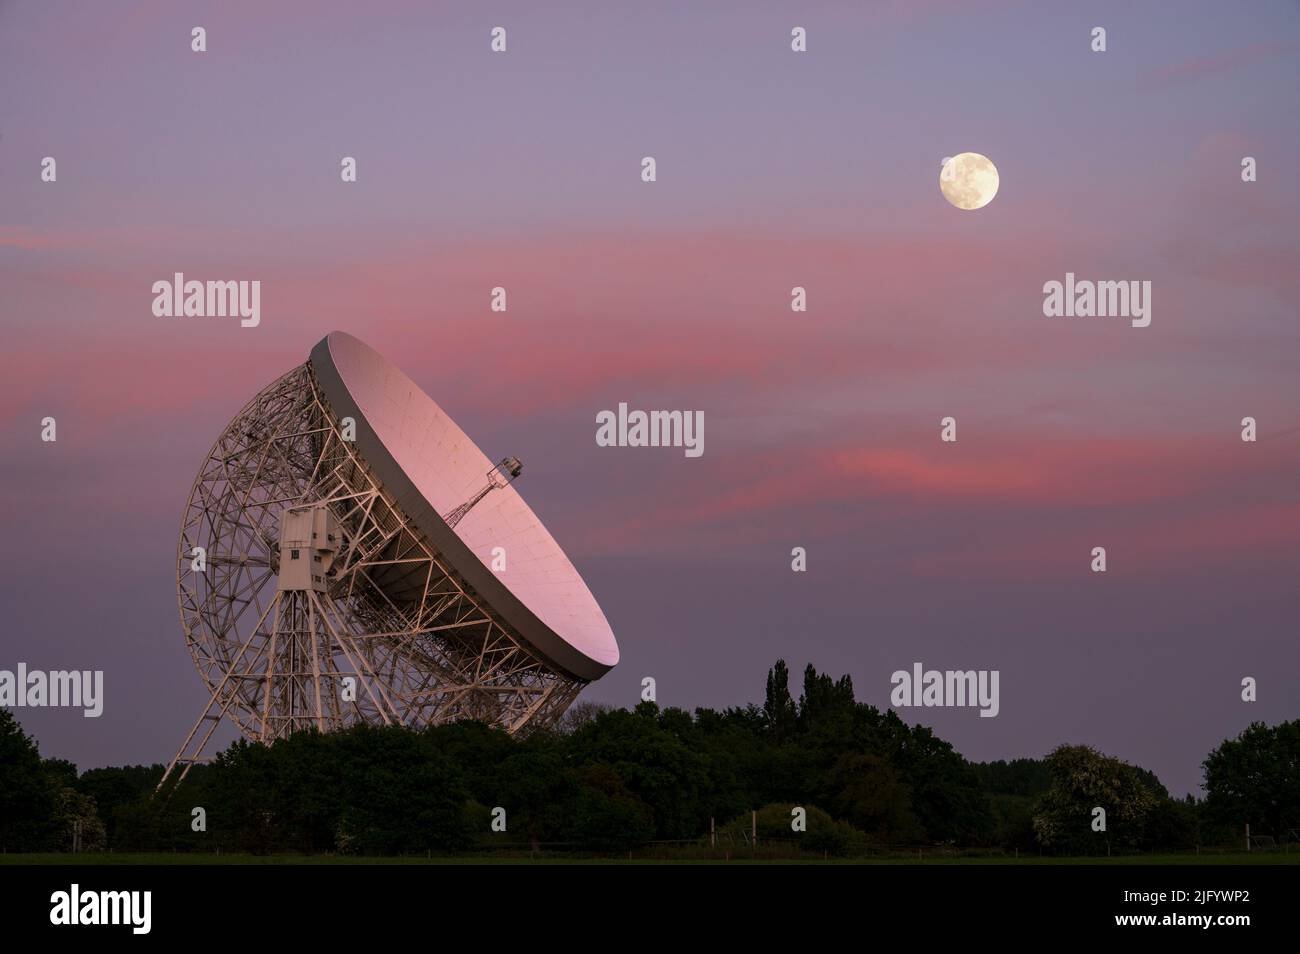 Le Lovell Mark I Giant radio Telescope la nuit avec un alignement parfait avec la pleine lune, Jodrell Bank, Cheshire, Angleterre, Royaume-Uni, Europe Banque D'Images